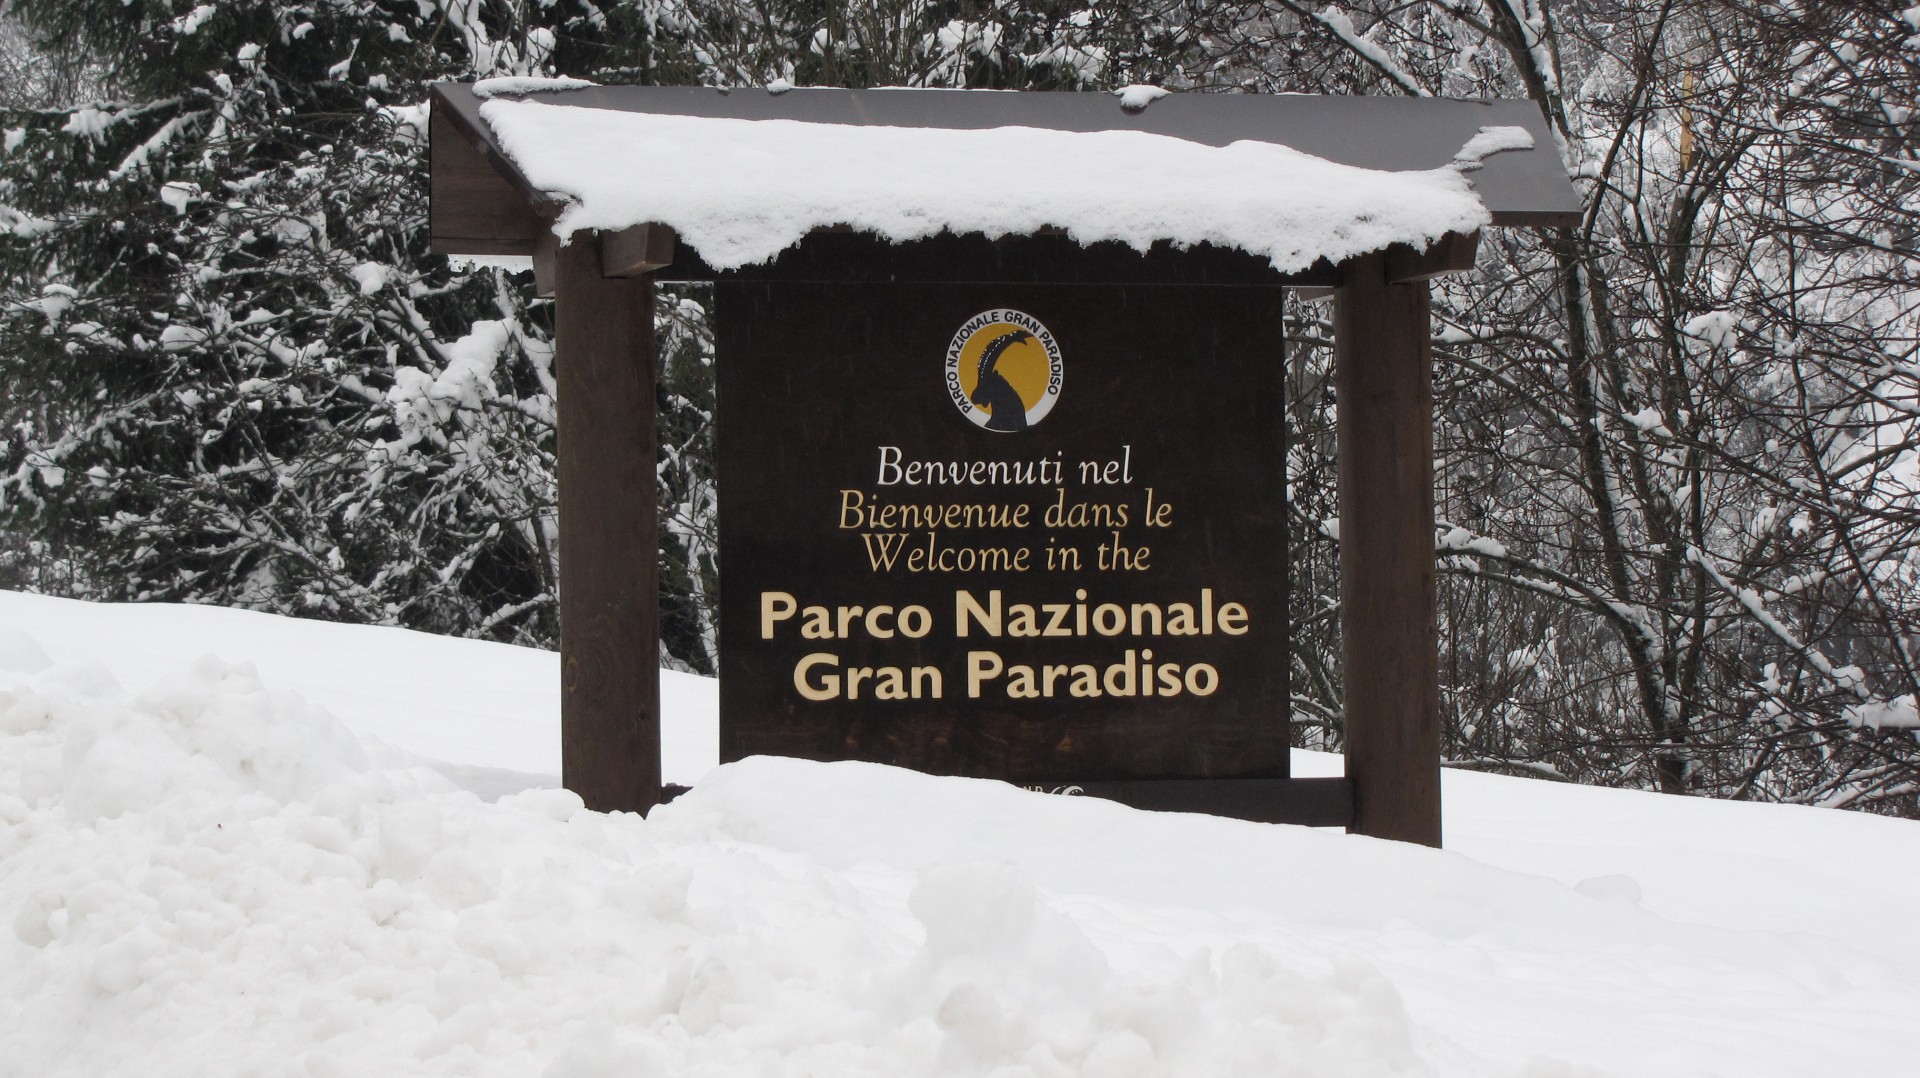 benvenuti nel parco nazionale gran paradiso